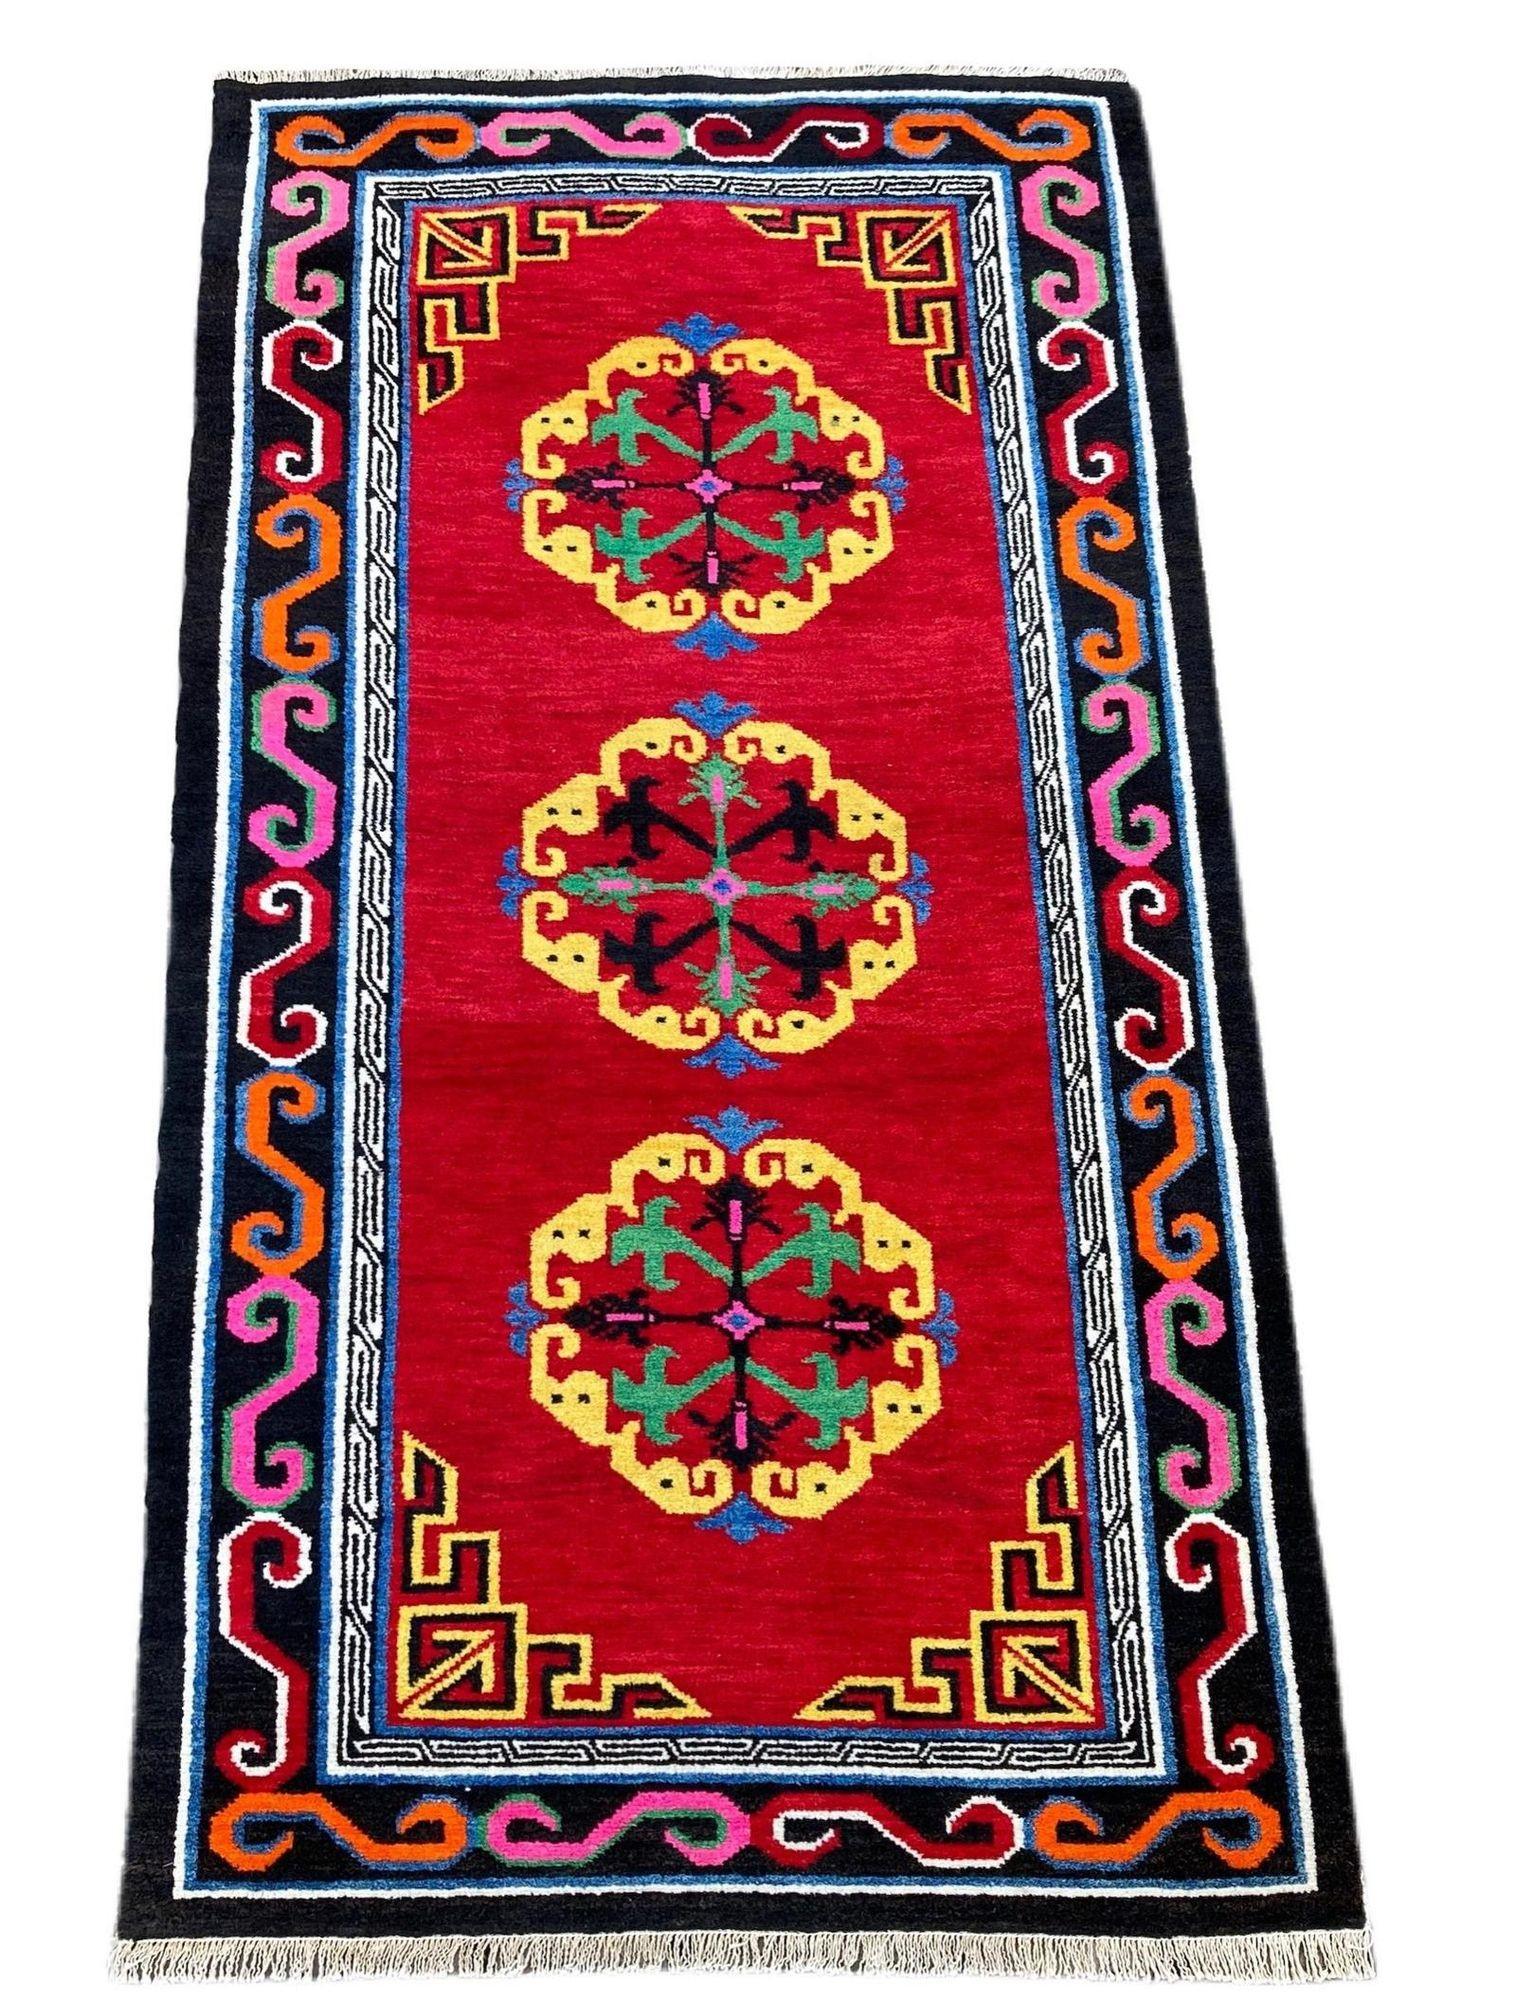 Ein heller und fröhlicher antiker tibetischer Teppich, handgewebt um 1920, mit einem Muster aus drei Medaillons auf einem tomatenroten Feld. Wunderbare Wollqualität und ziemlich flippige Sekundärfarben!
Größe: 1.70m x 0..97m (5ft 7in x 3ft